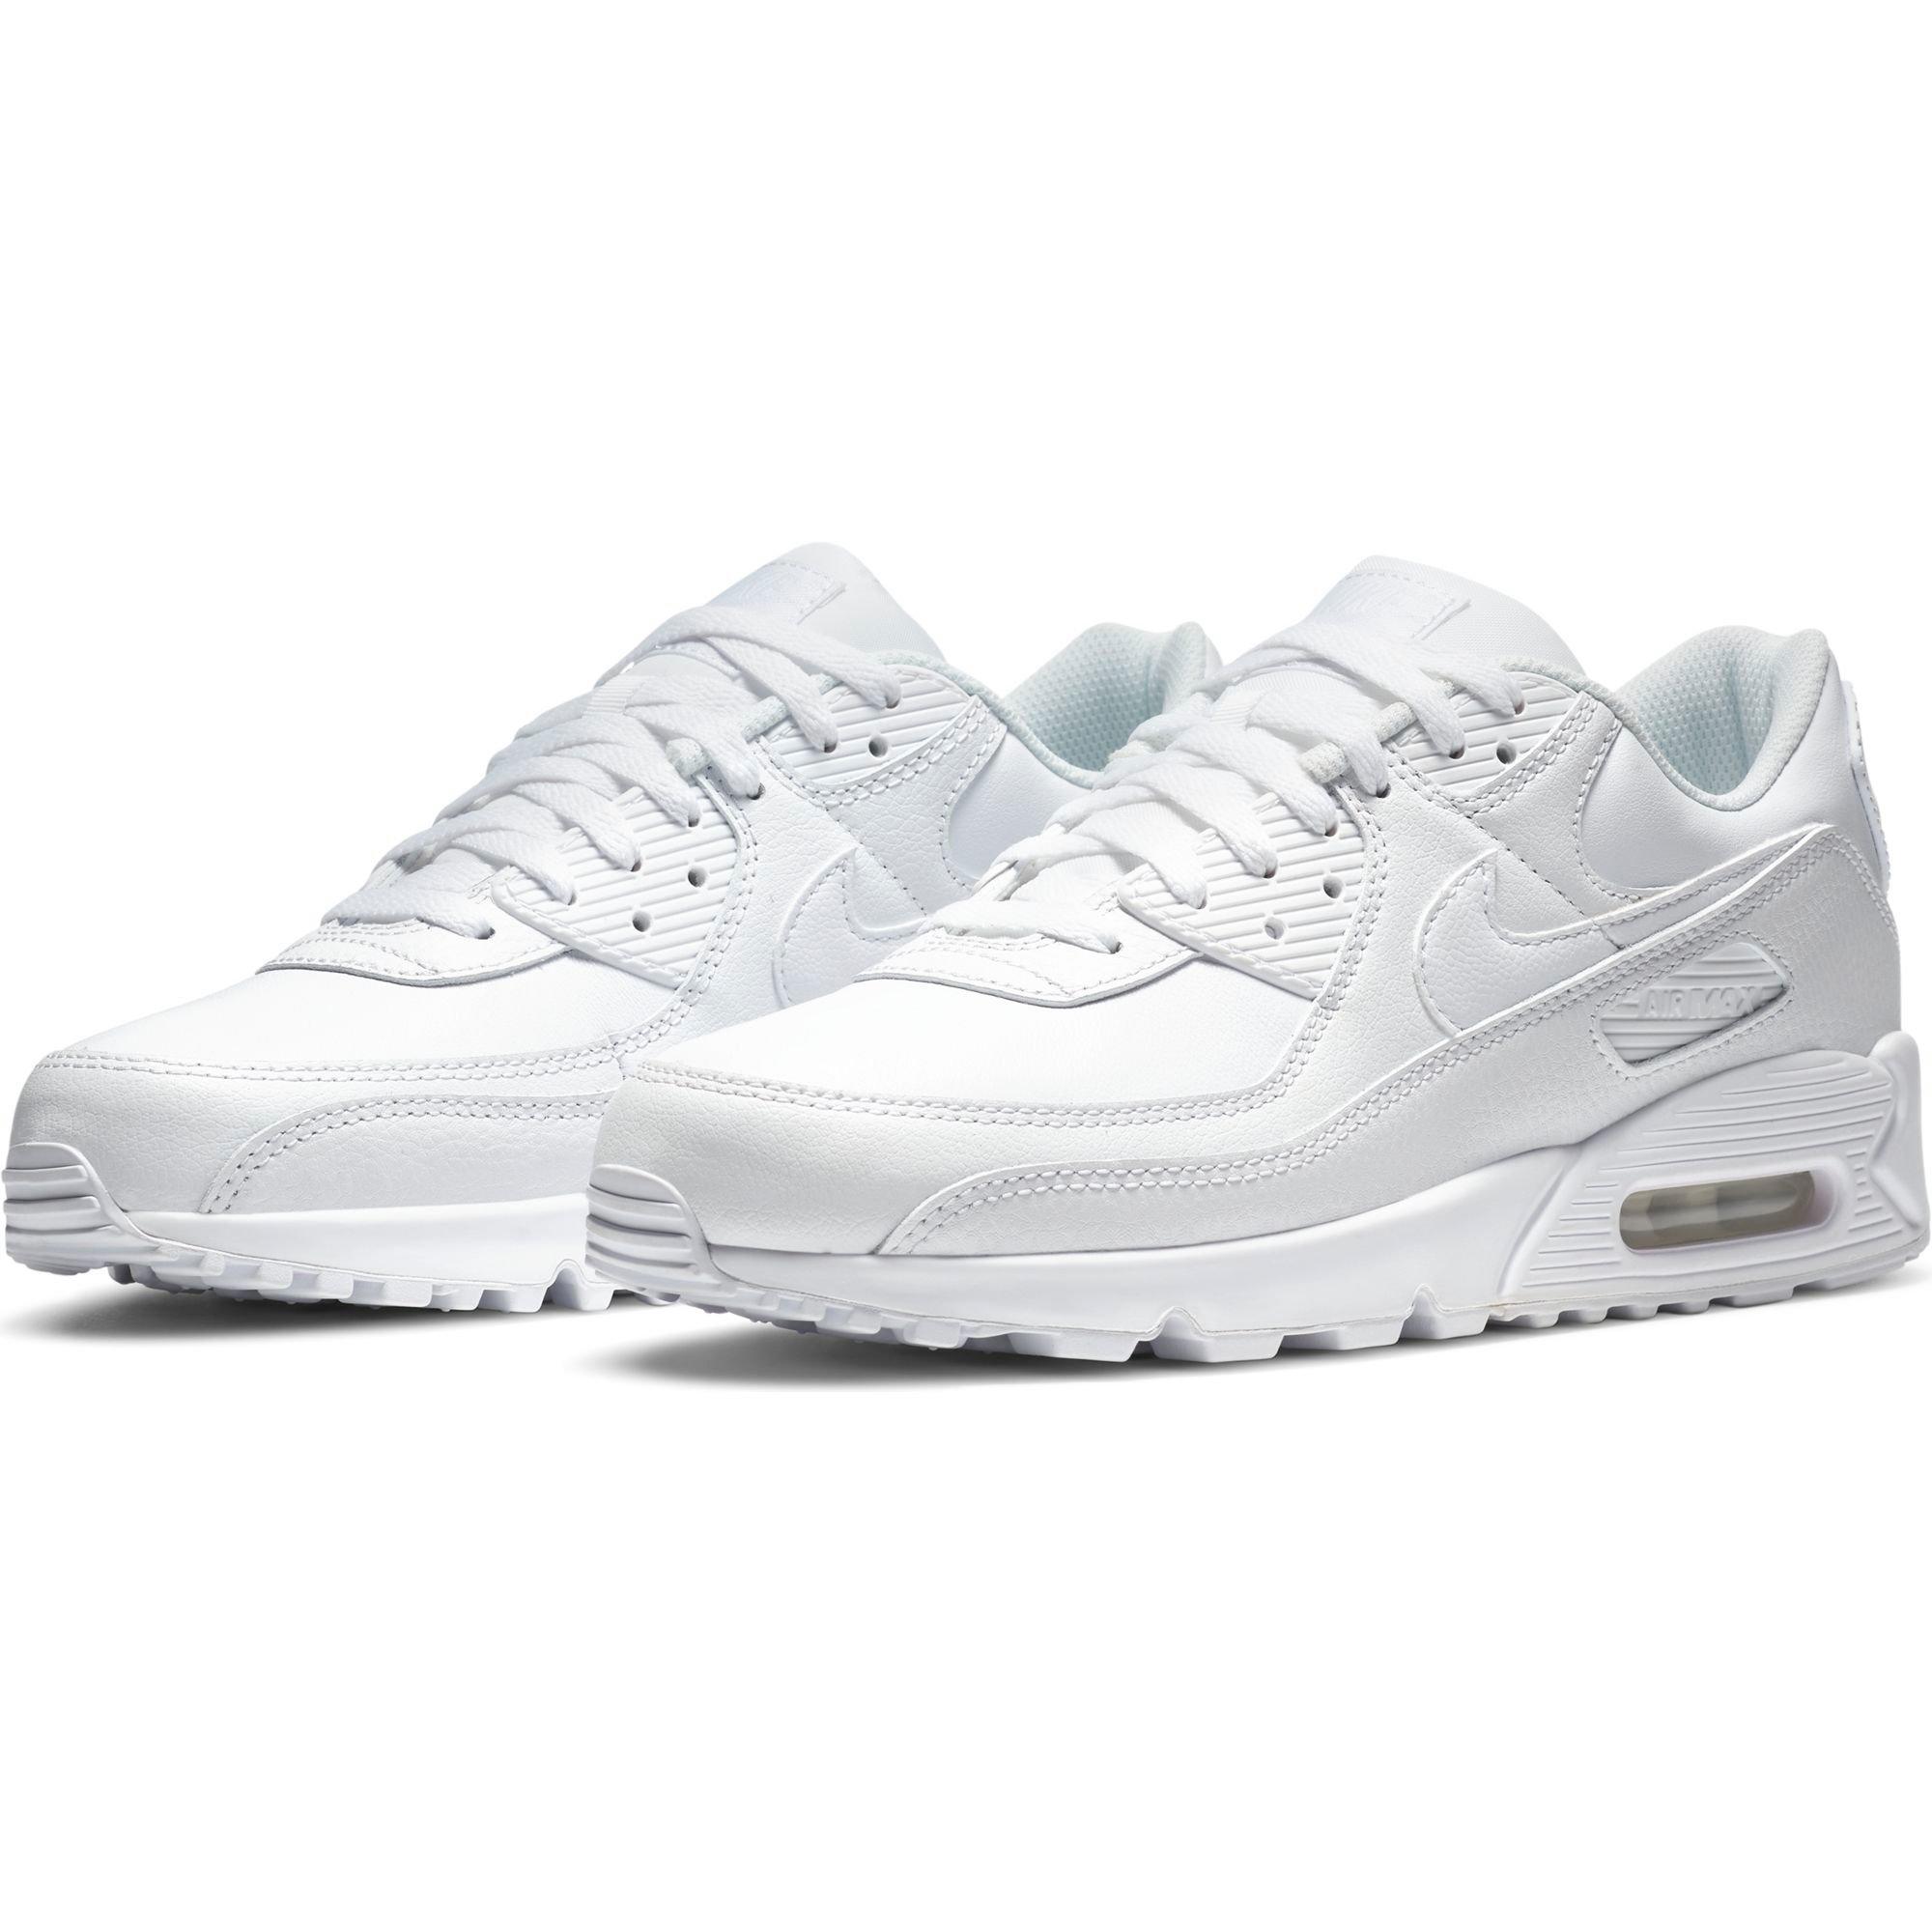 justa Partina City intermitente Nike Air Max 90 Leather "White/White" Men's Shoe